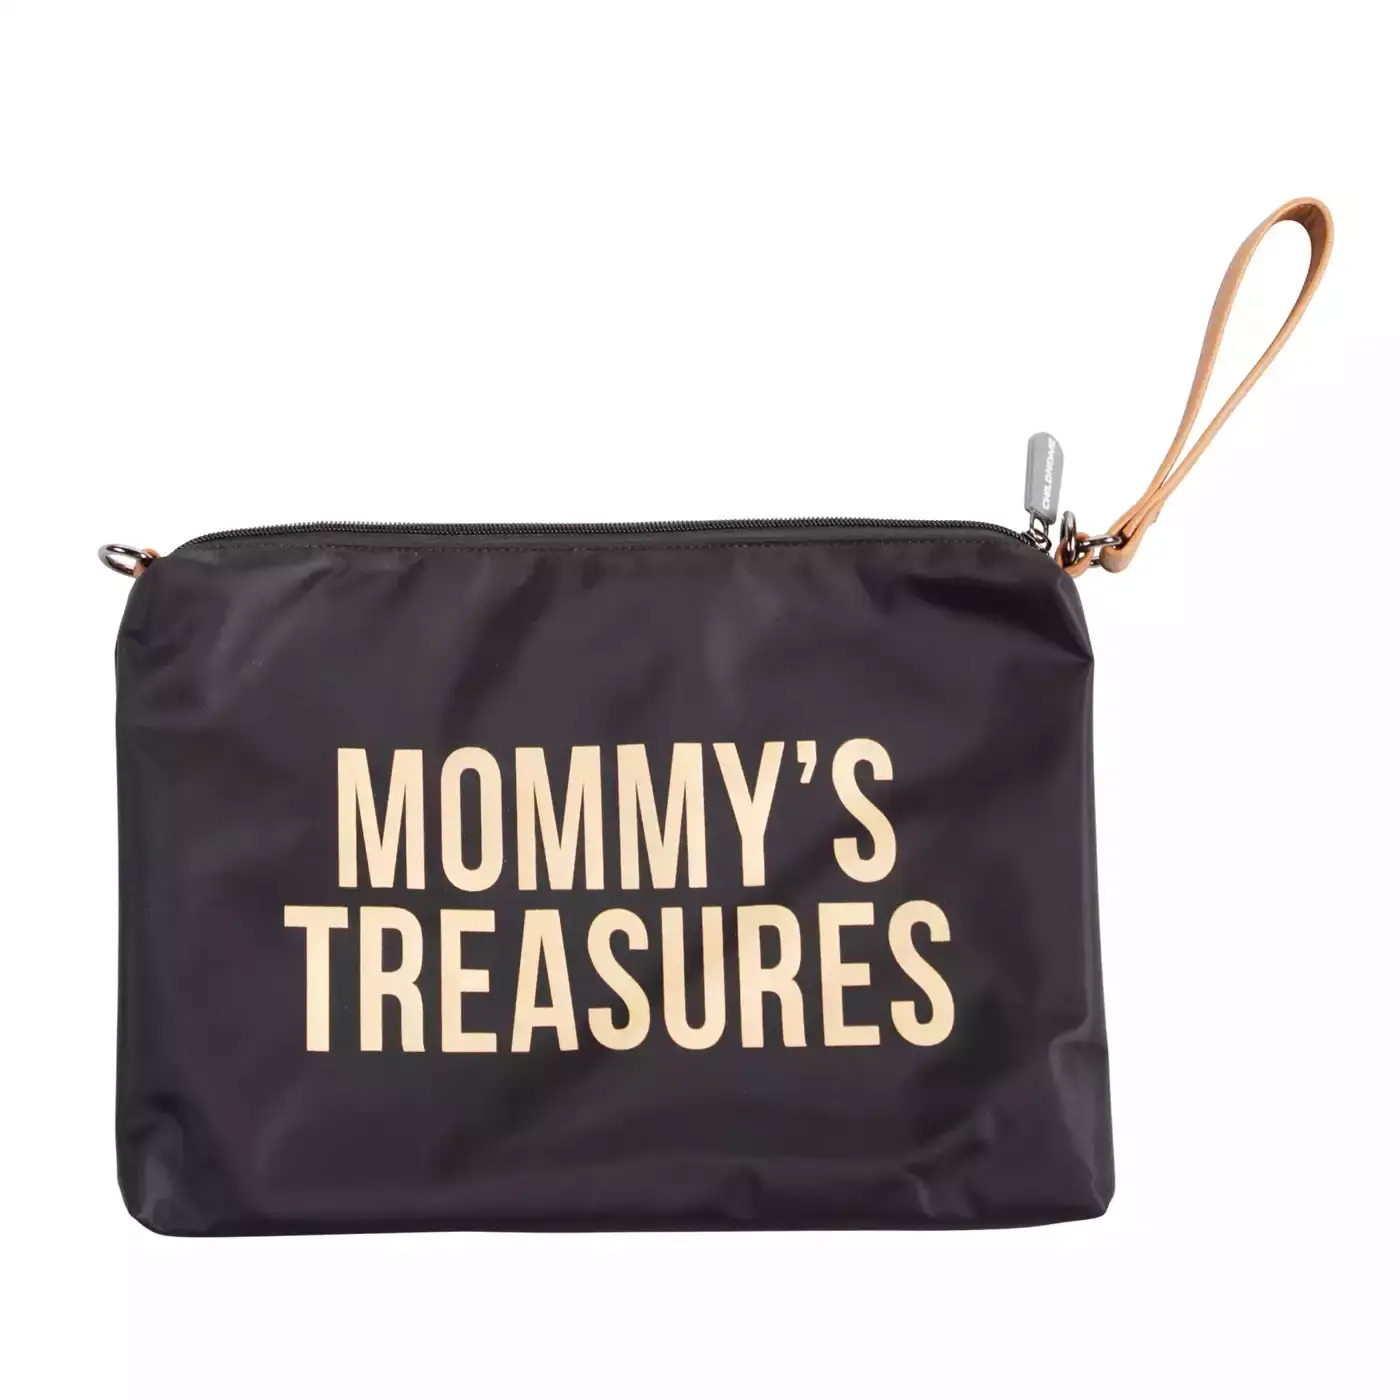 Mommy's Treasures Clutch CHILDHOME Schwarz Gold Gelb 2000580656169 1